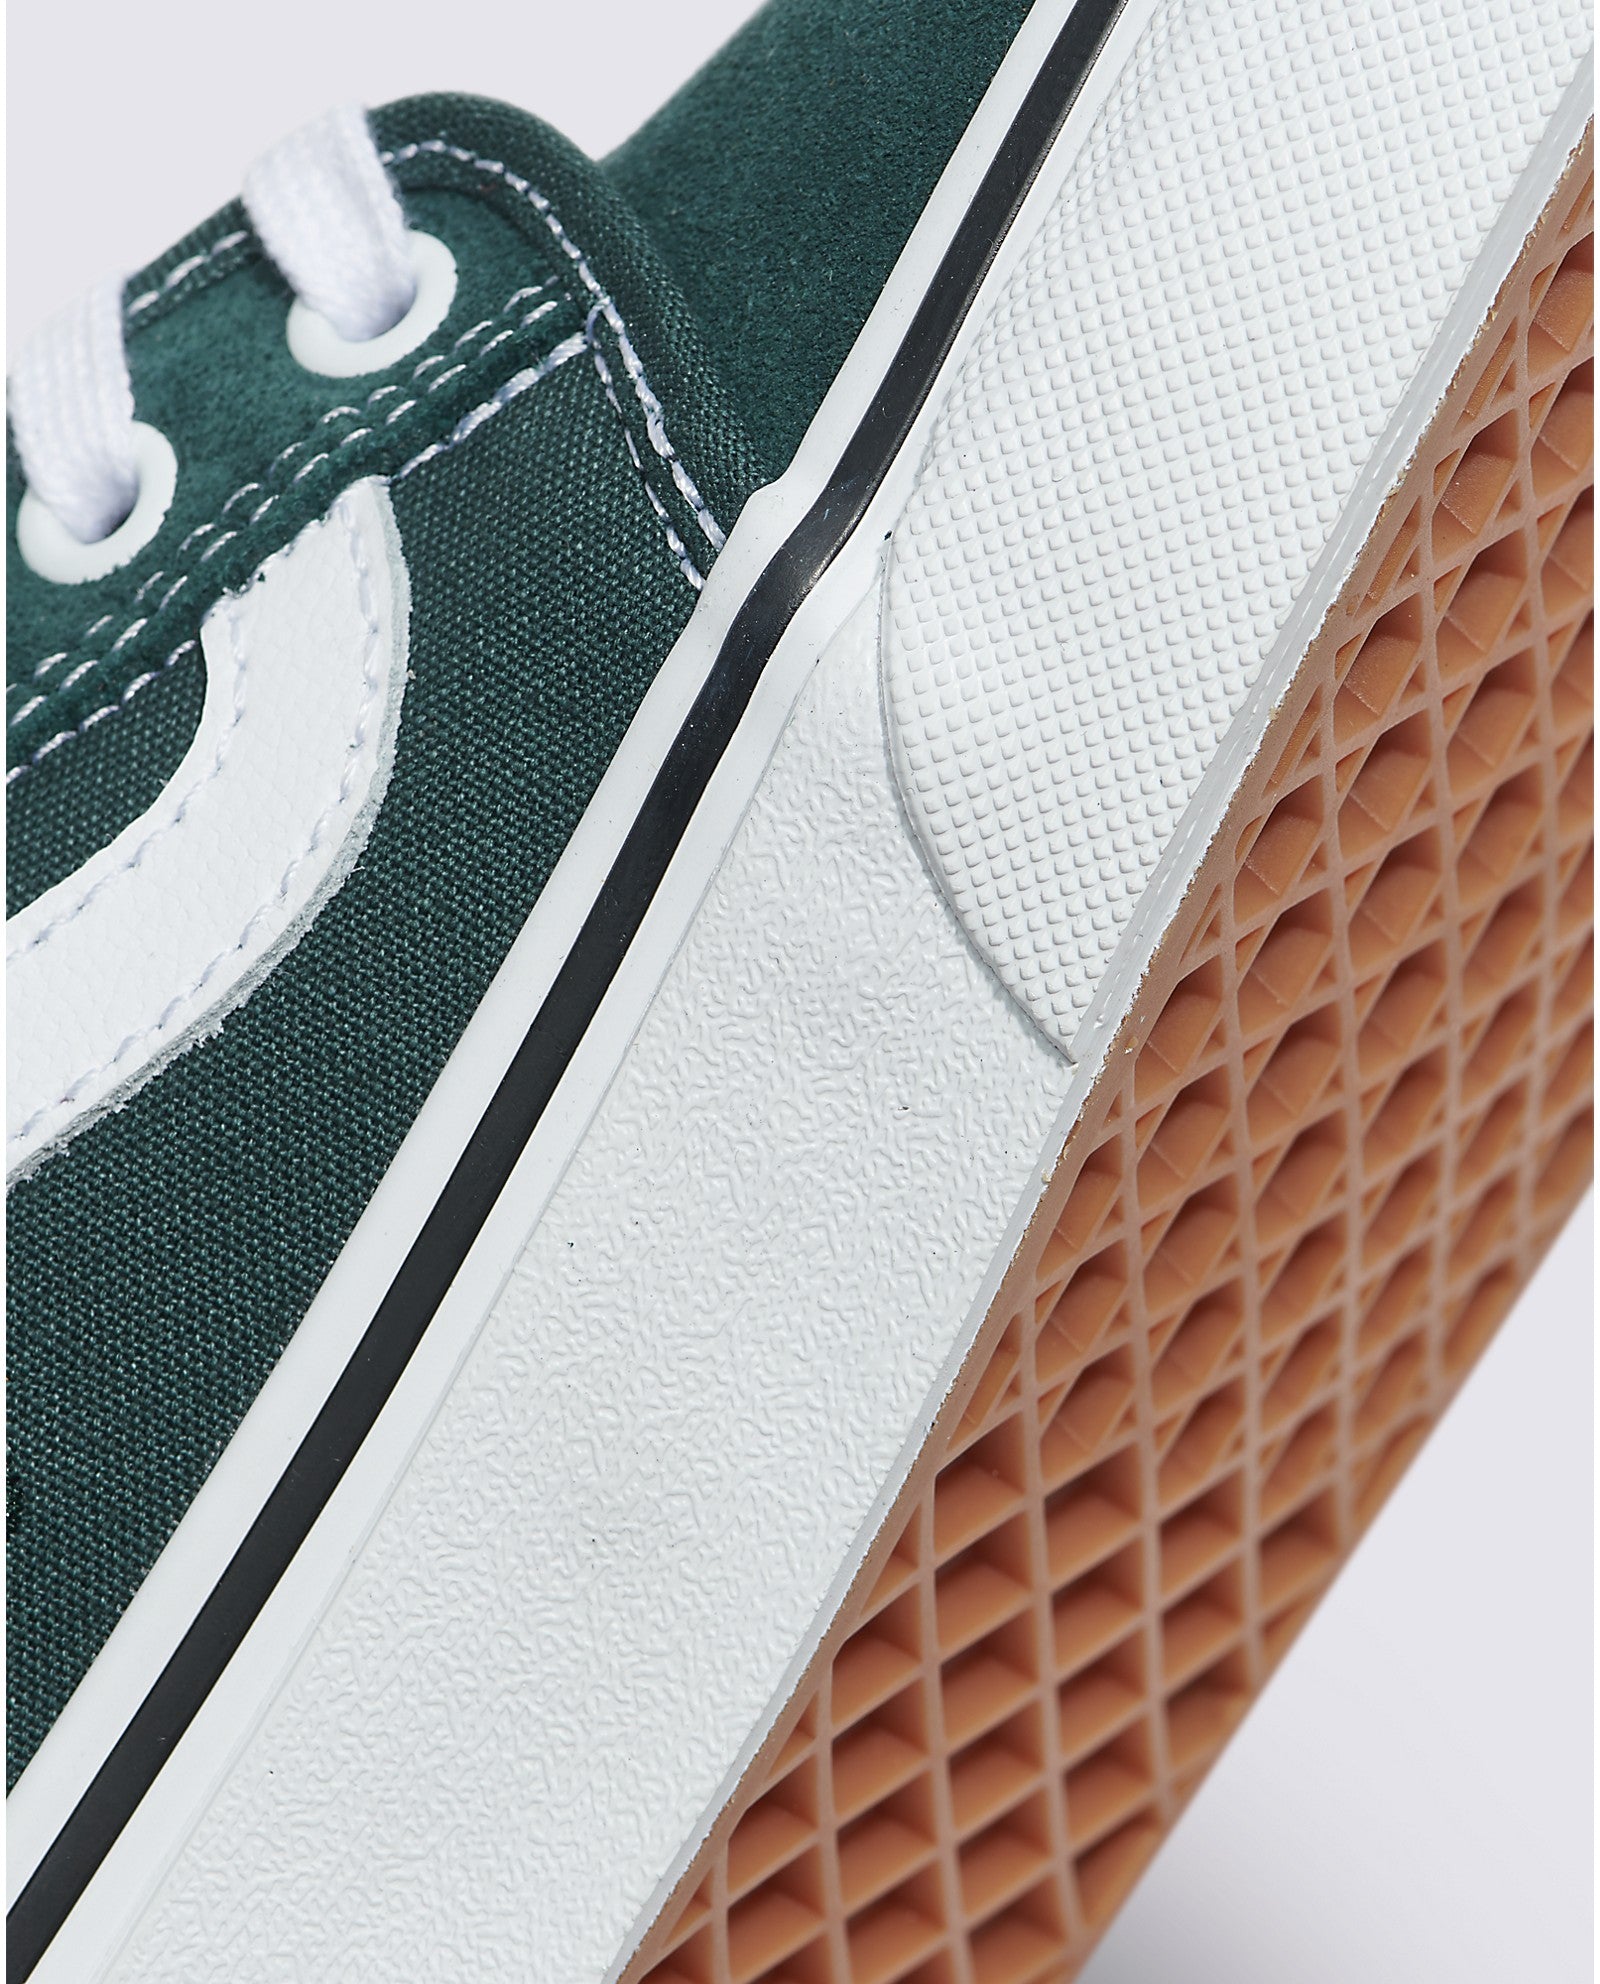 Green Gables Chukka Low Sidestripe Vans Skate Shoe Detail